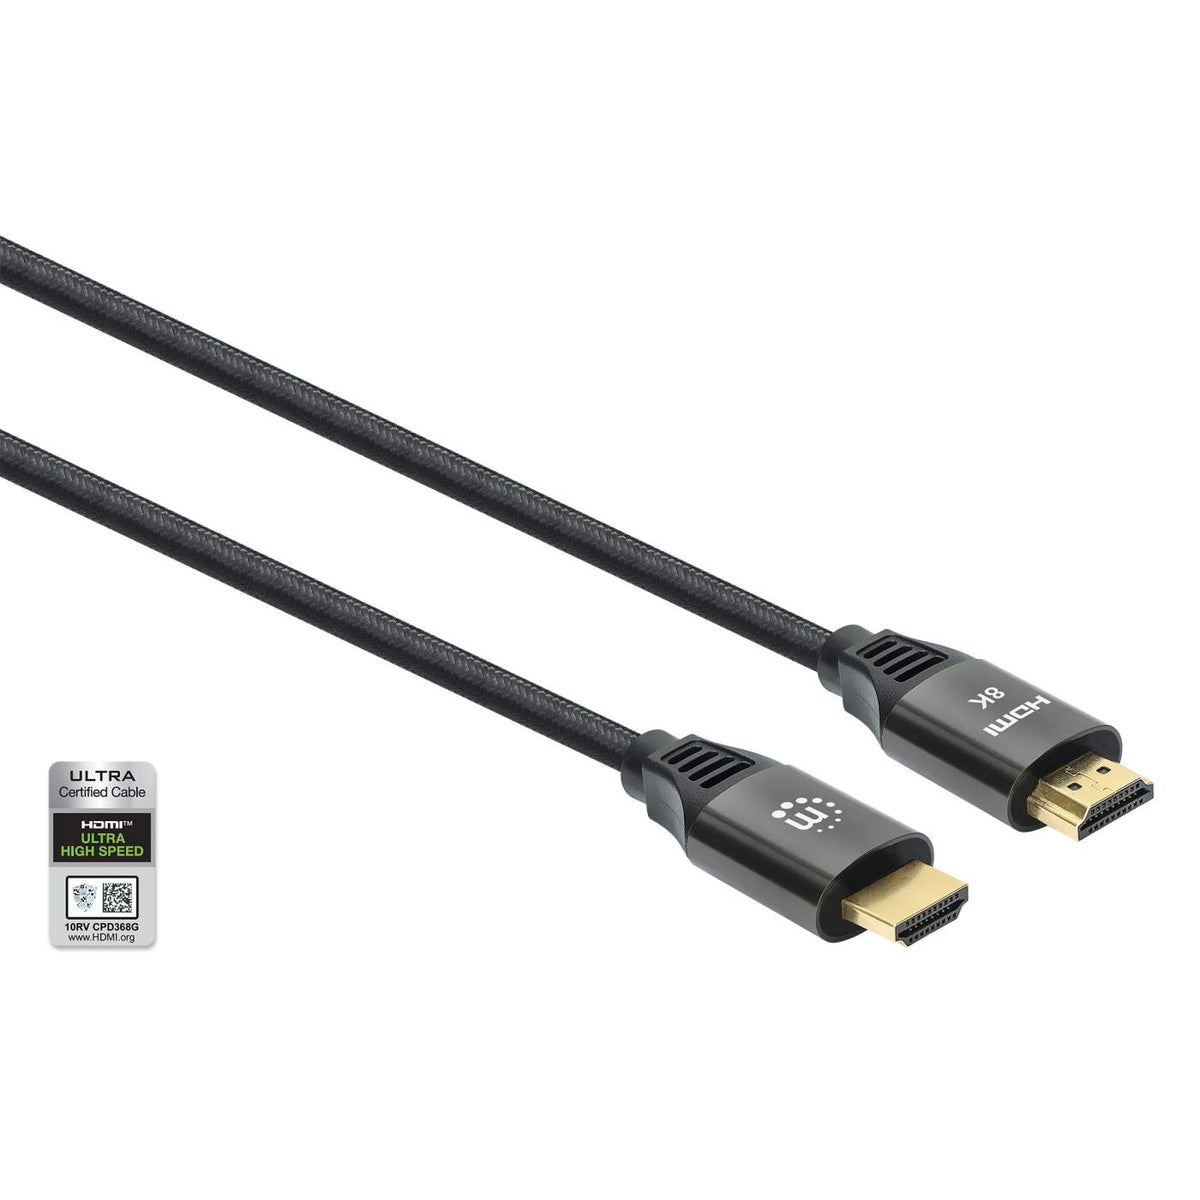 CABLE HDMI 2.1 COMPATIBLE AVEC ETHERNET MALE/MALE - 3M